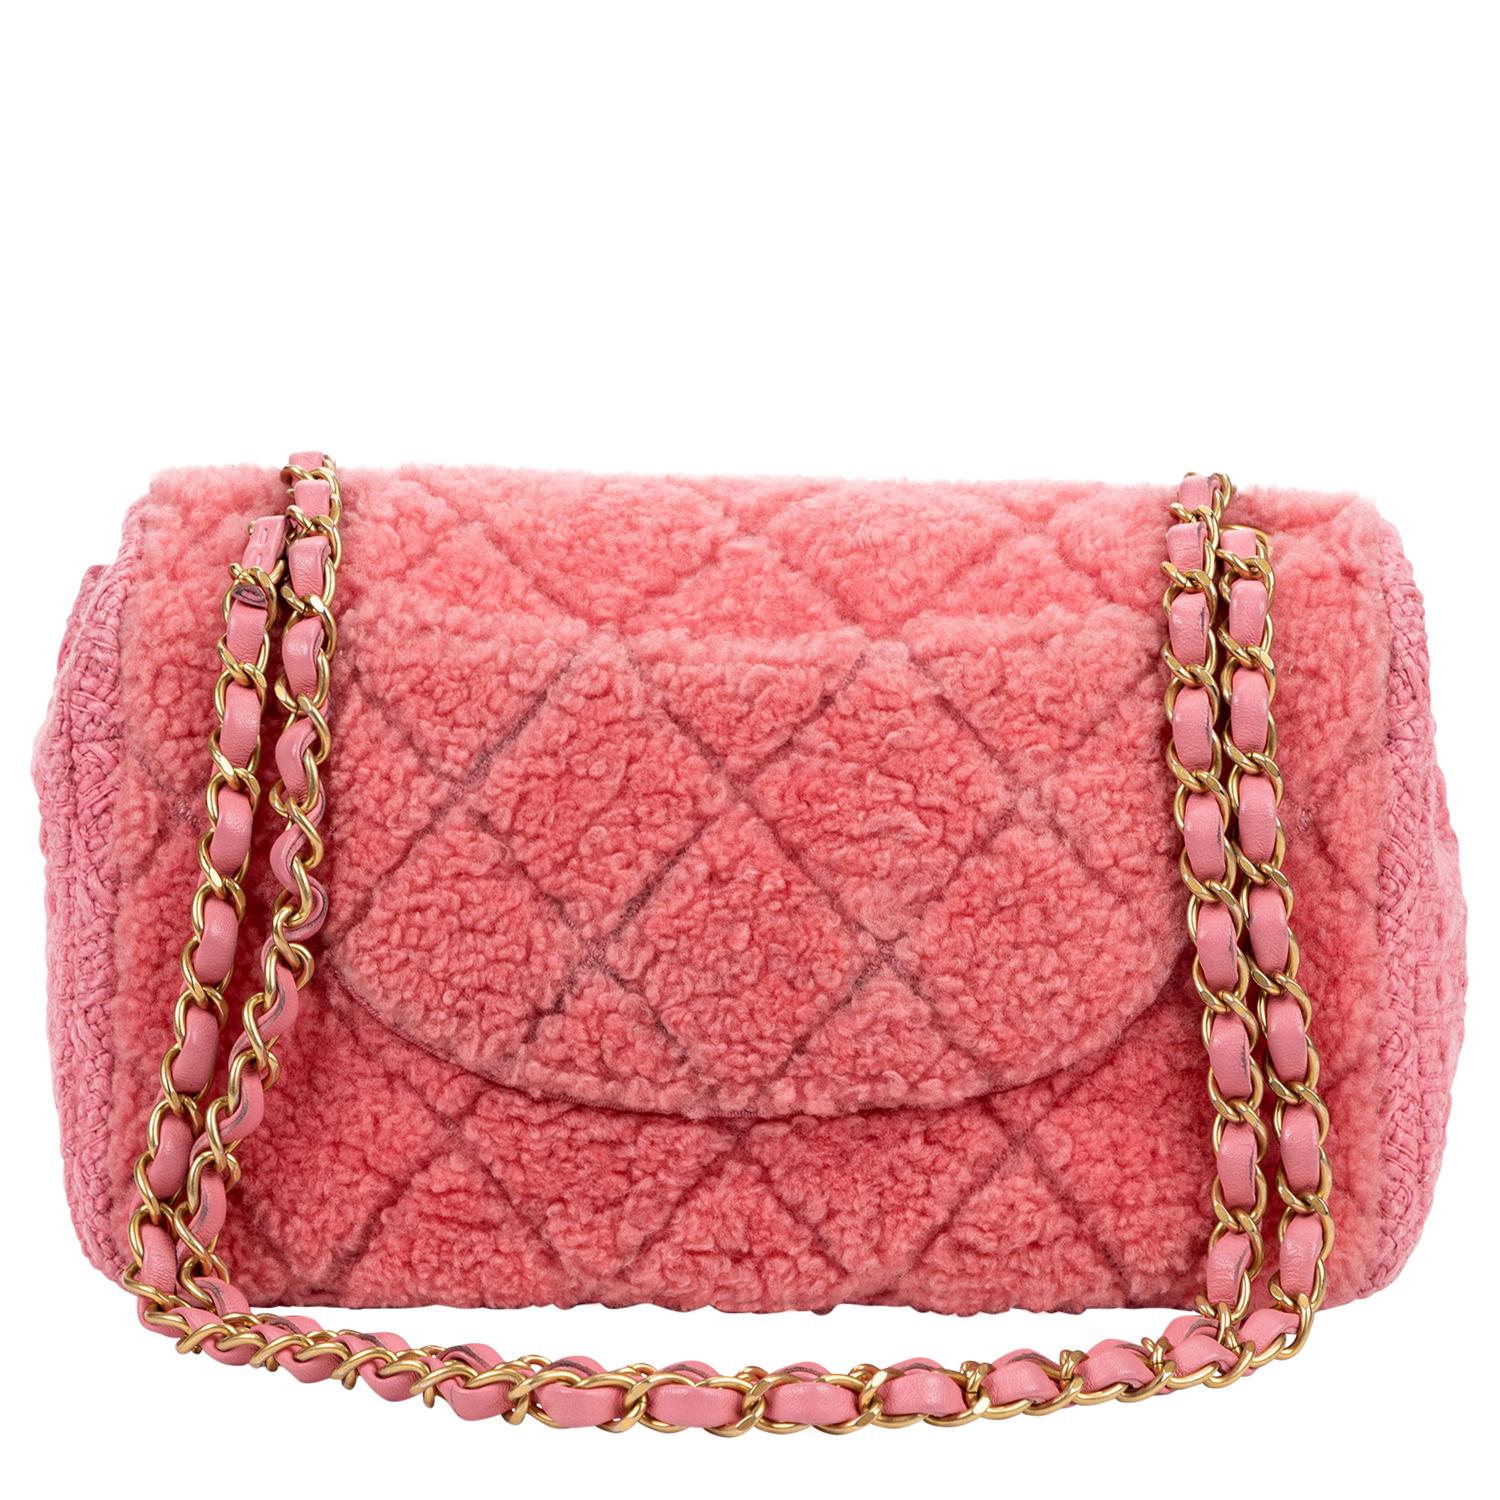 pink furry bag